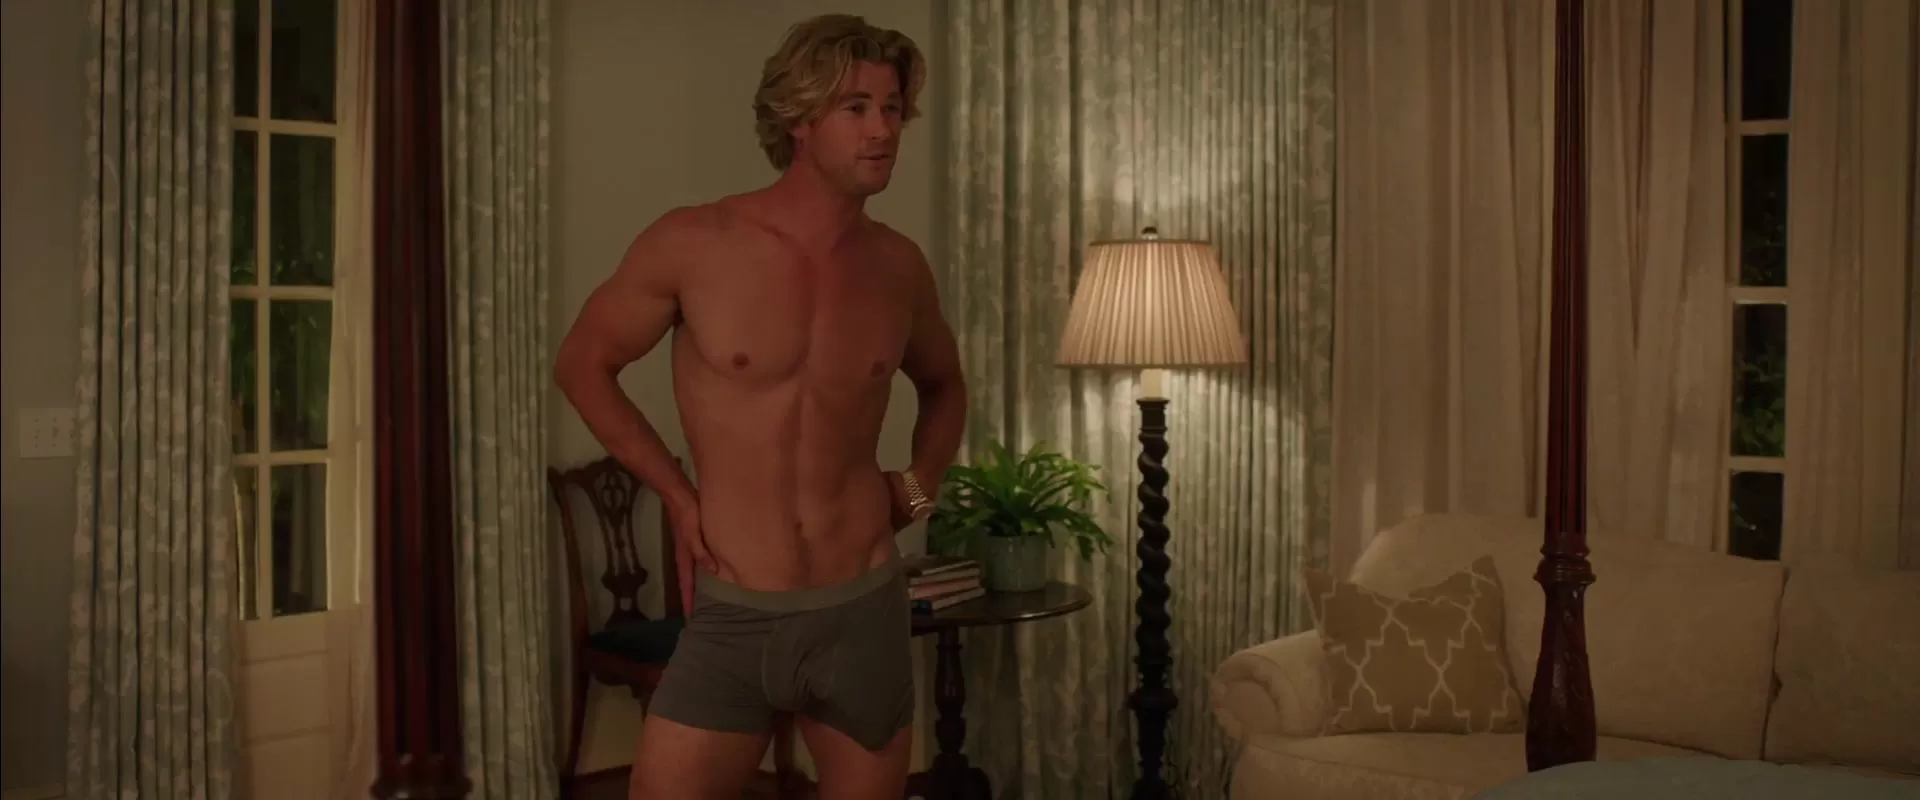 Chris Hemsworth Nude Porn - Chris Hemsworth nude - Vacation (2015)